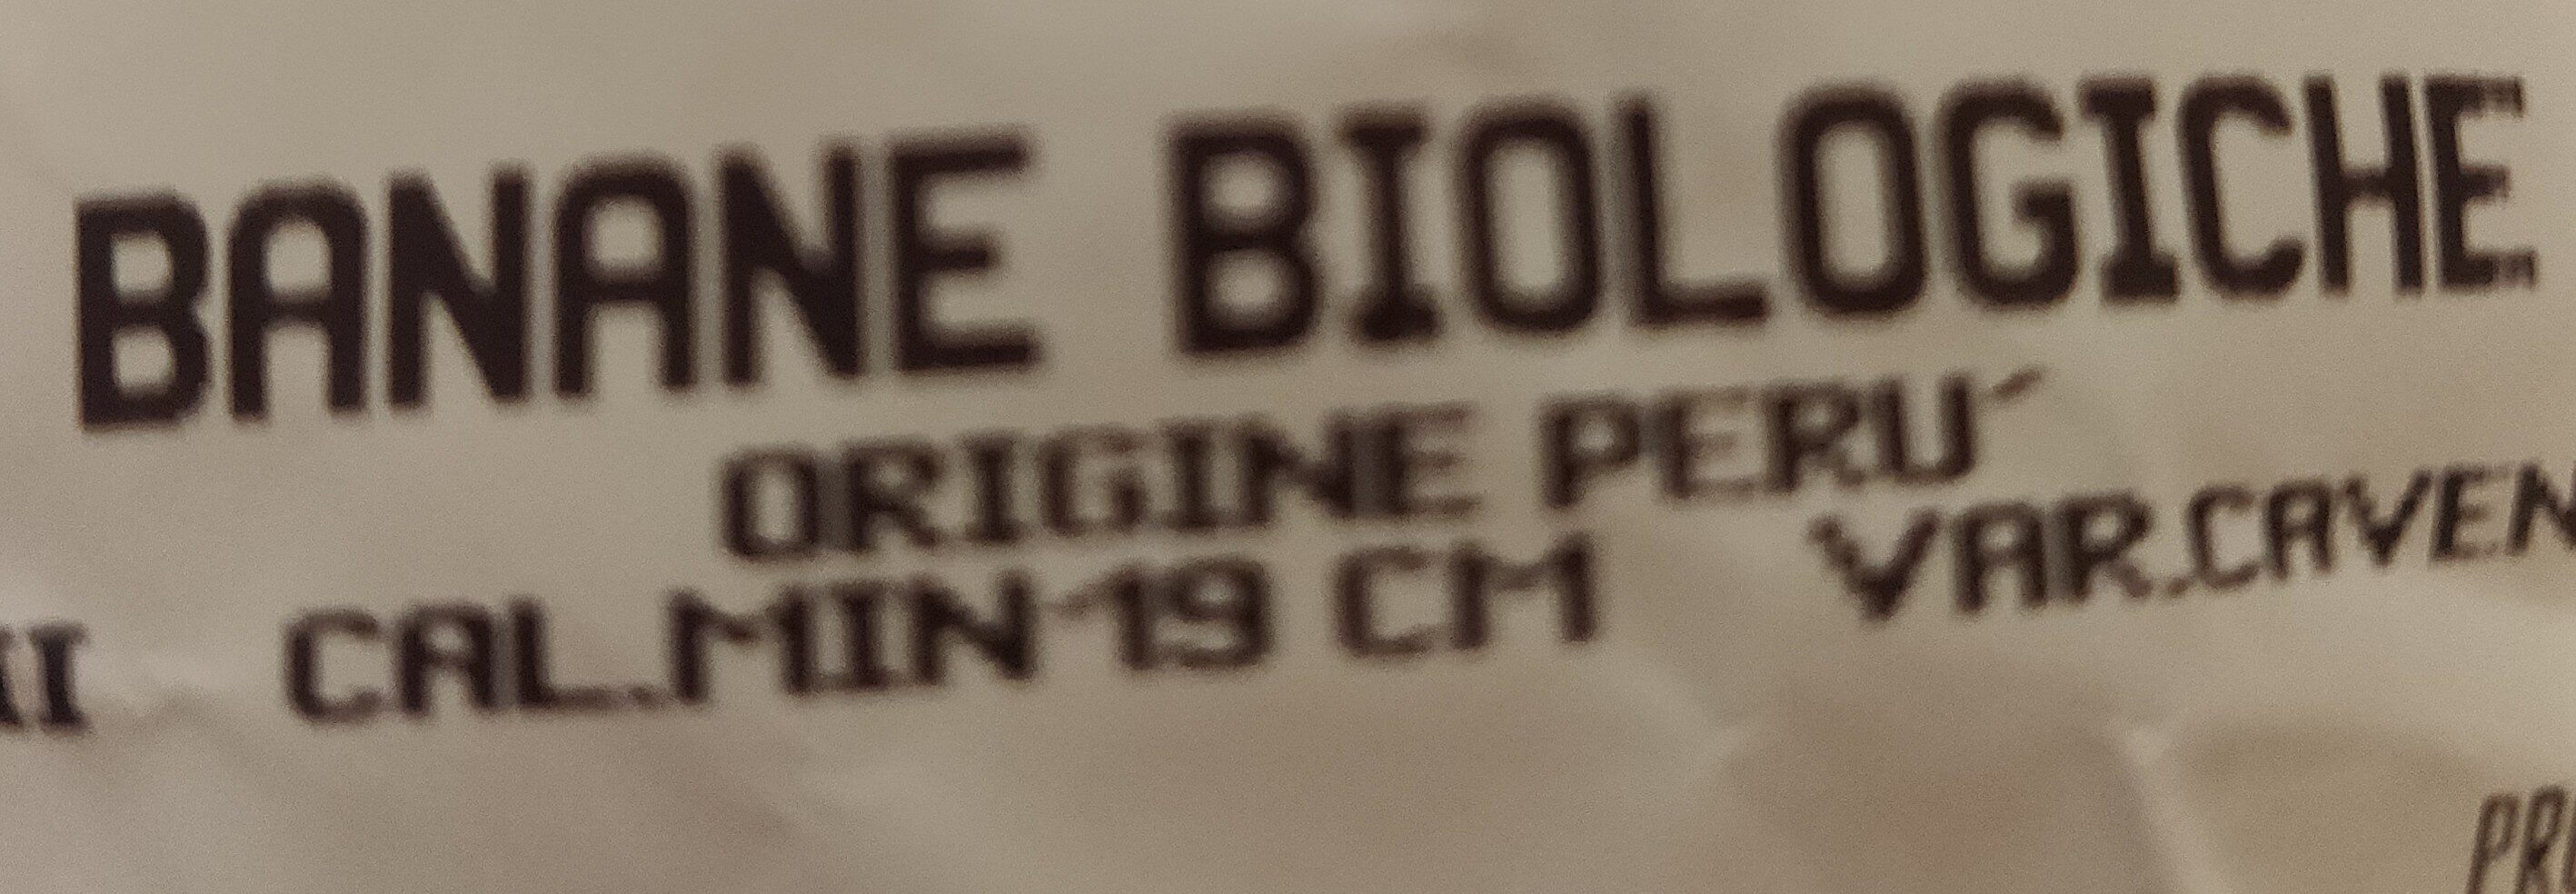 banane biologiche - Ingrédients - it